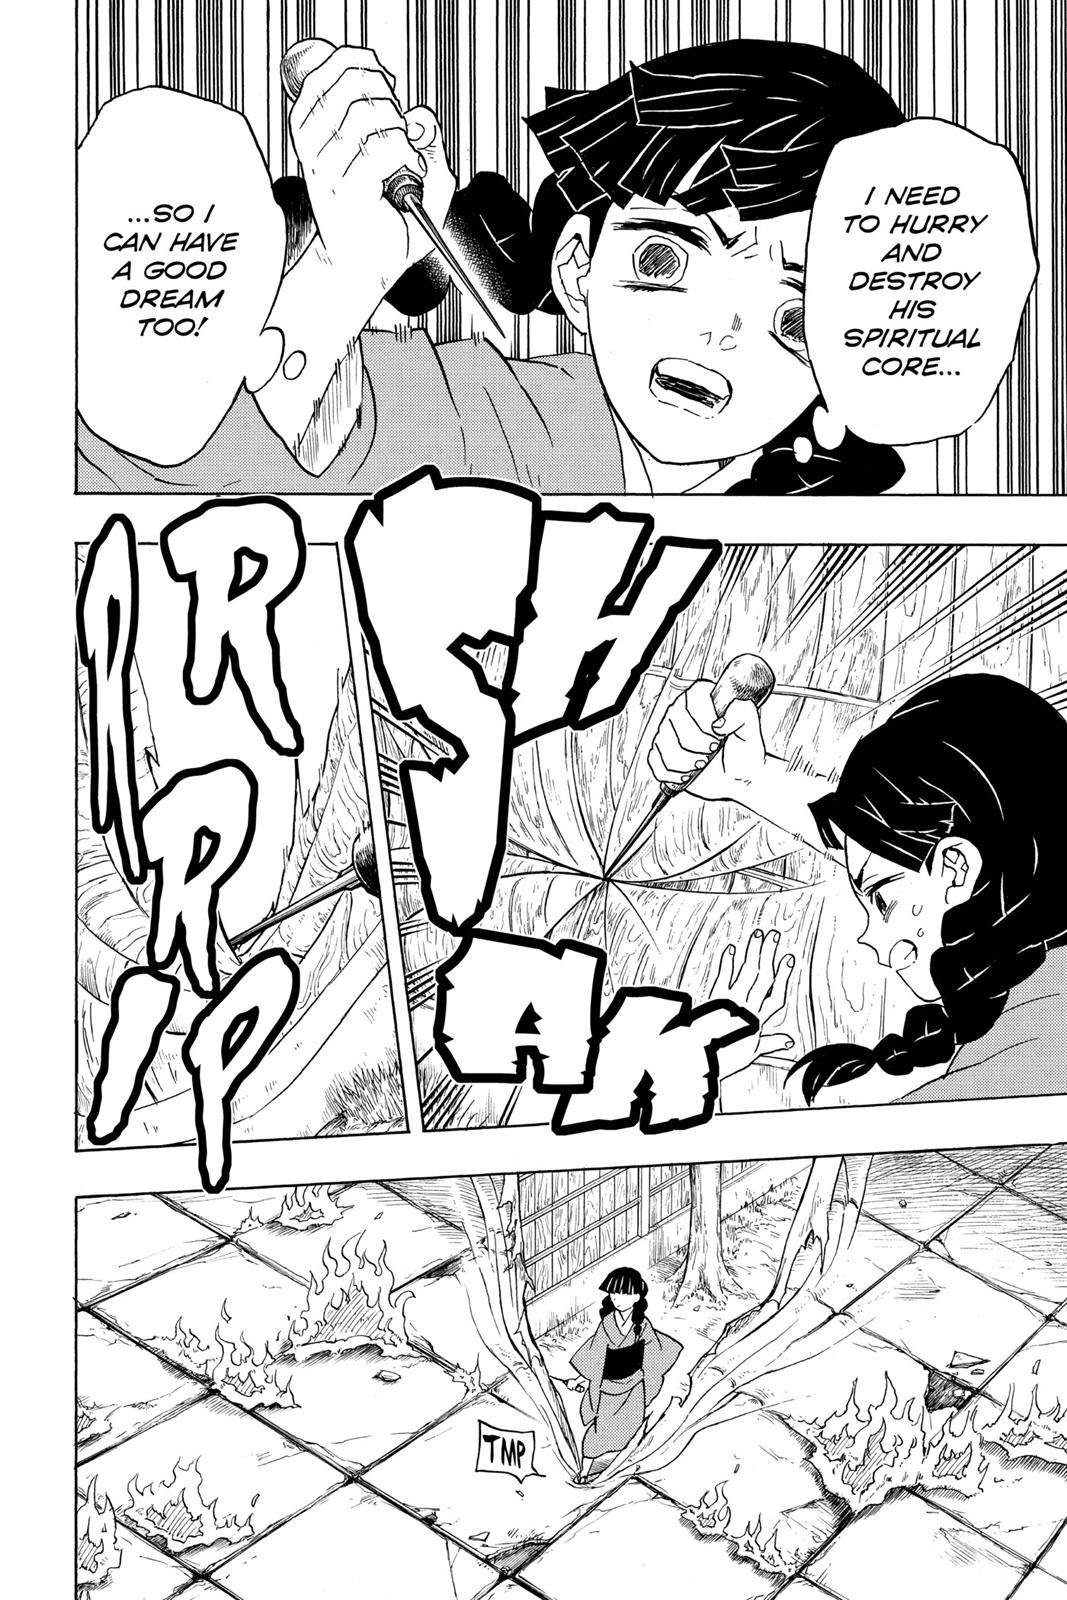 Demon Slayer Manga Manga Chapter - 56 - image 3